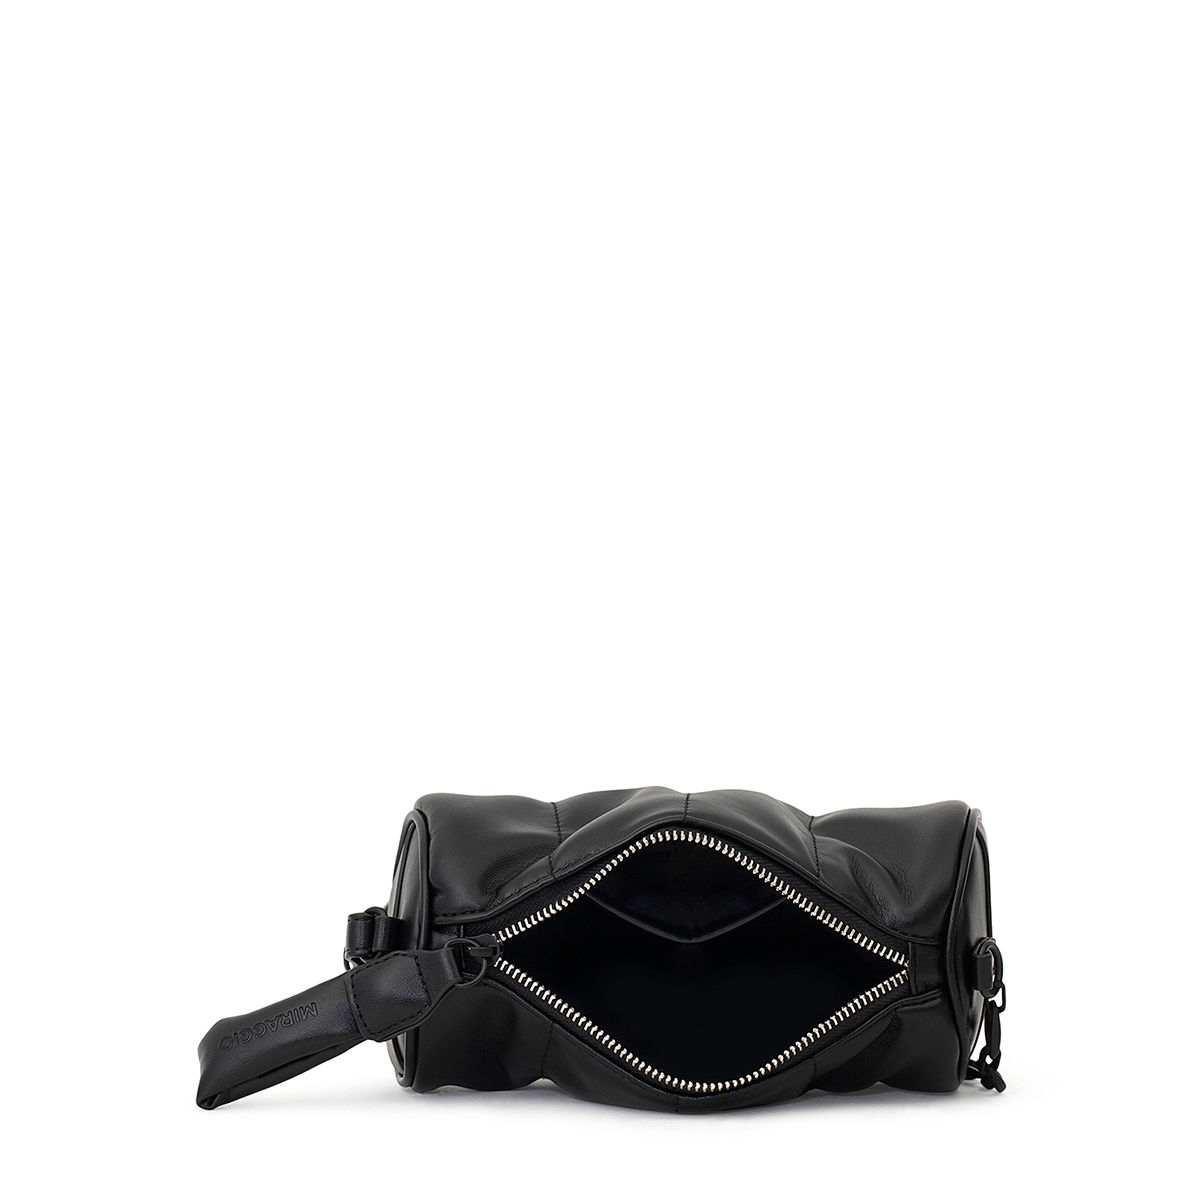 MIRAGGIO Black Esme Crossbody Bag: Buy MIRAGGIO Black Esme Crossbody ...